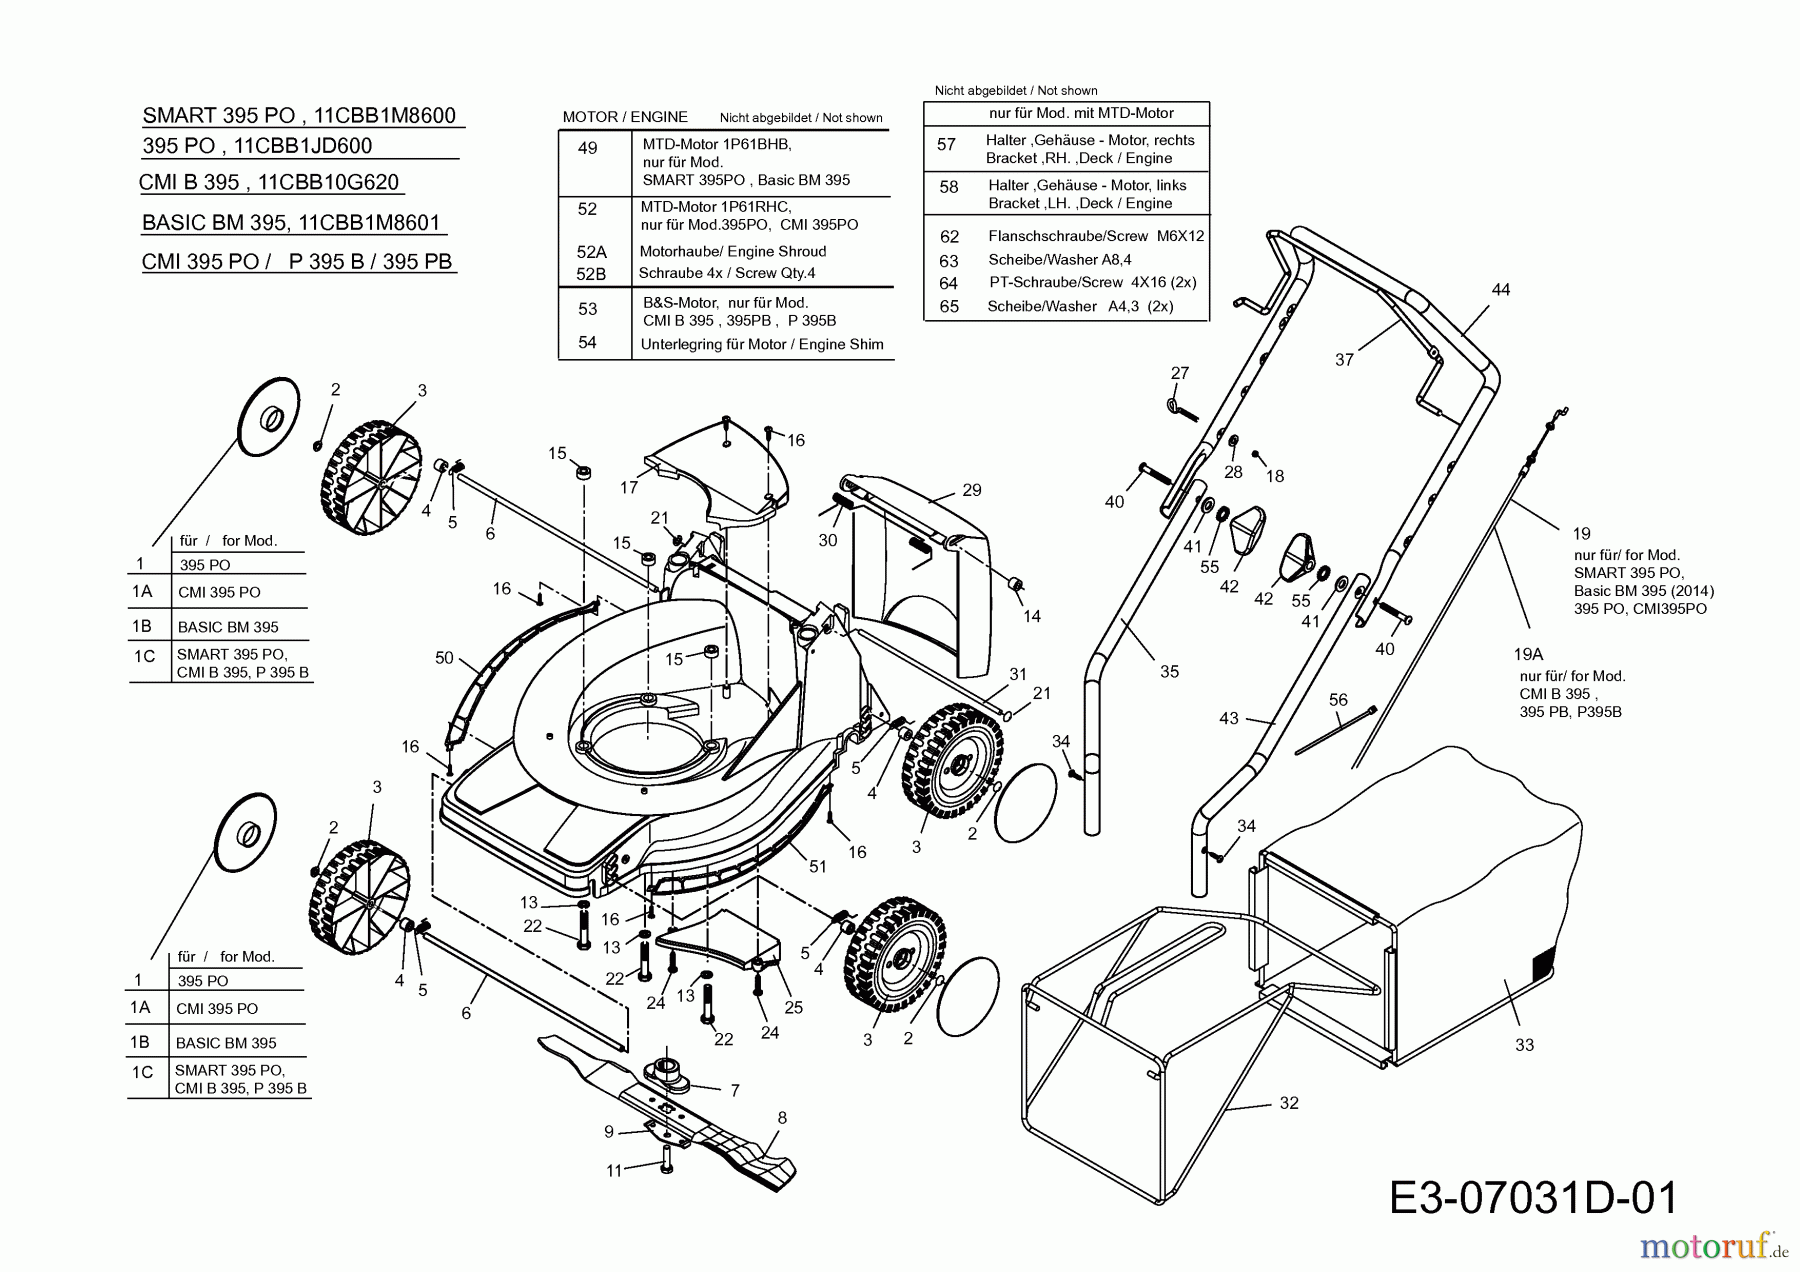  Basic Motormäher Basic BM 395 11CBB1JD601  (2014) Grundgerät